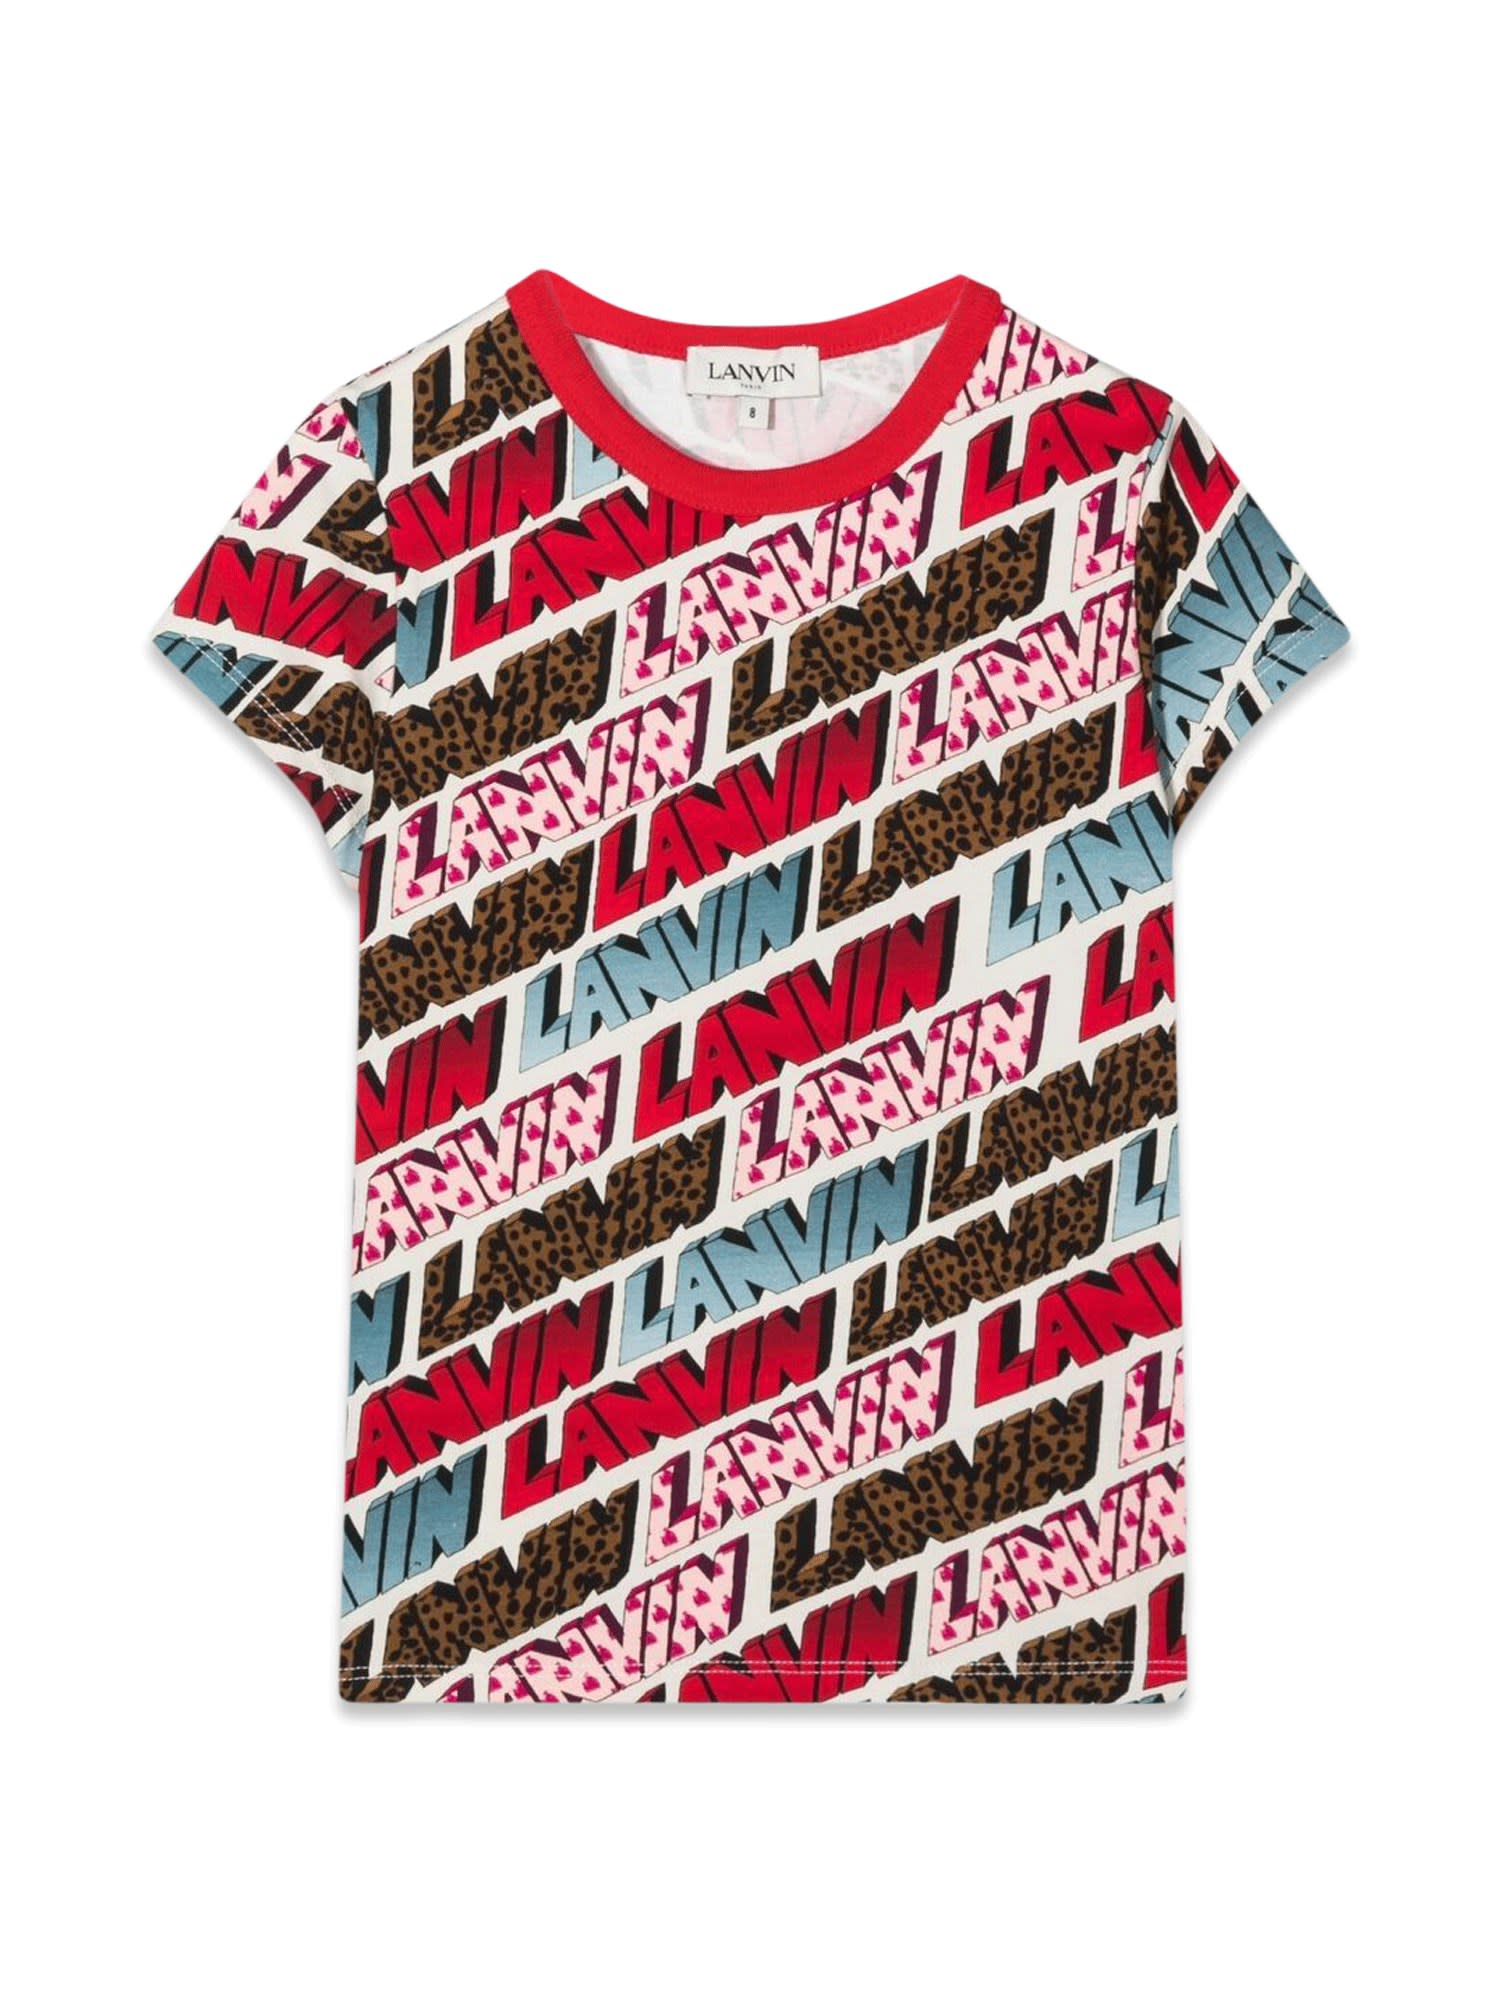 Lanvin Kids' Short Sleeve Allover Logo T-shirt In Multicolor